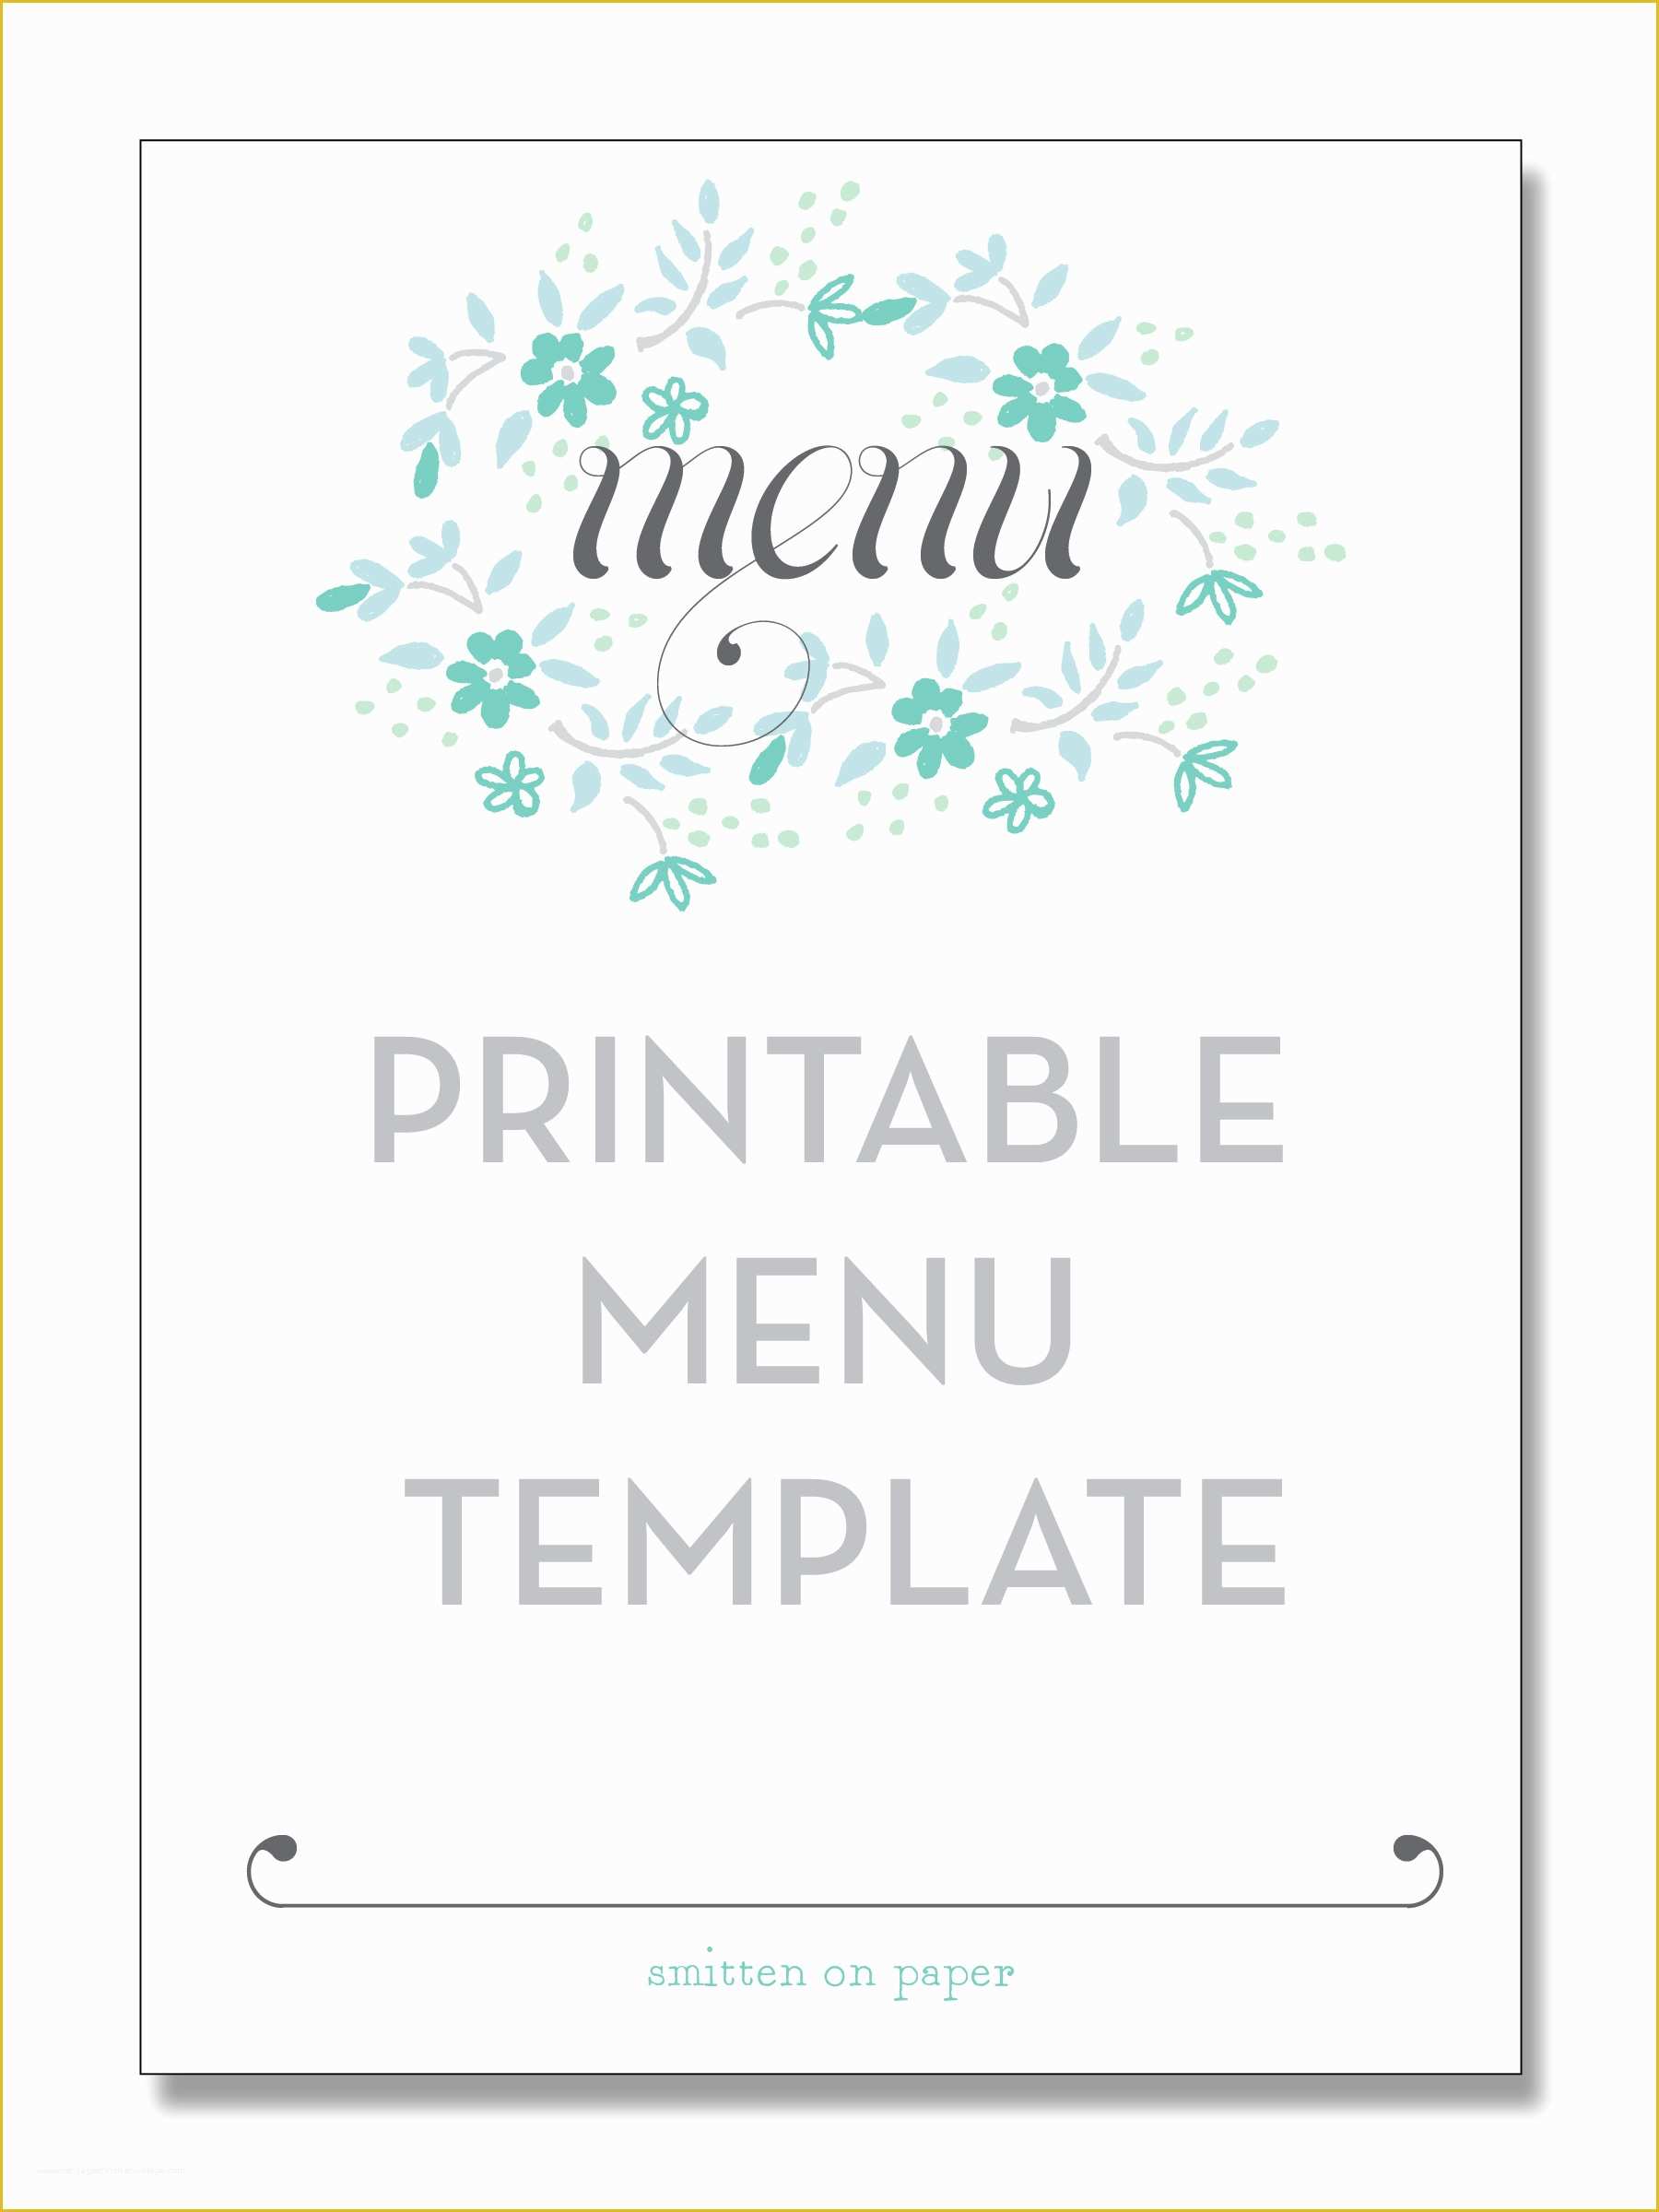 Free Online Menu Templates Of 4 Best Of Free Printable Template Restaurant Menus